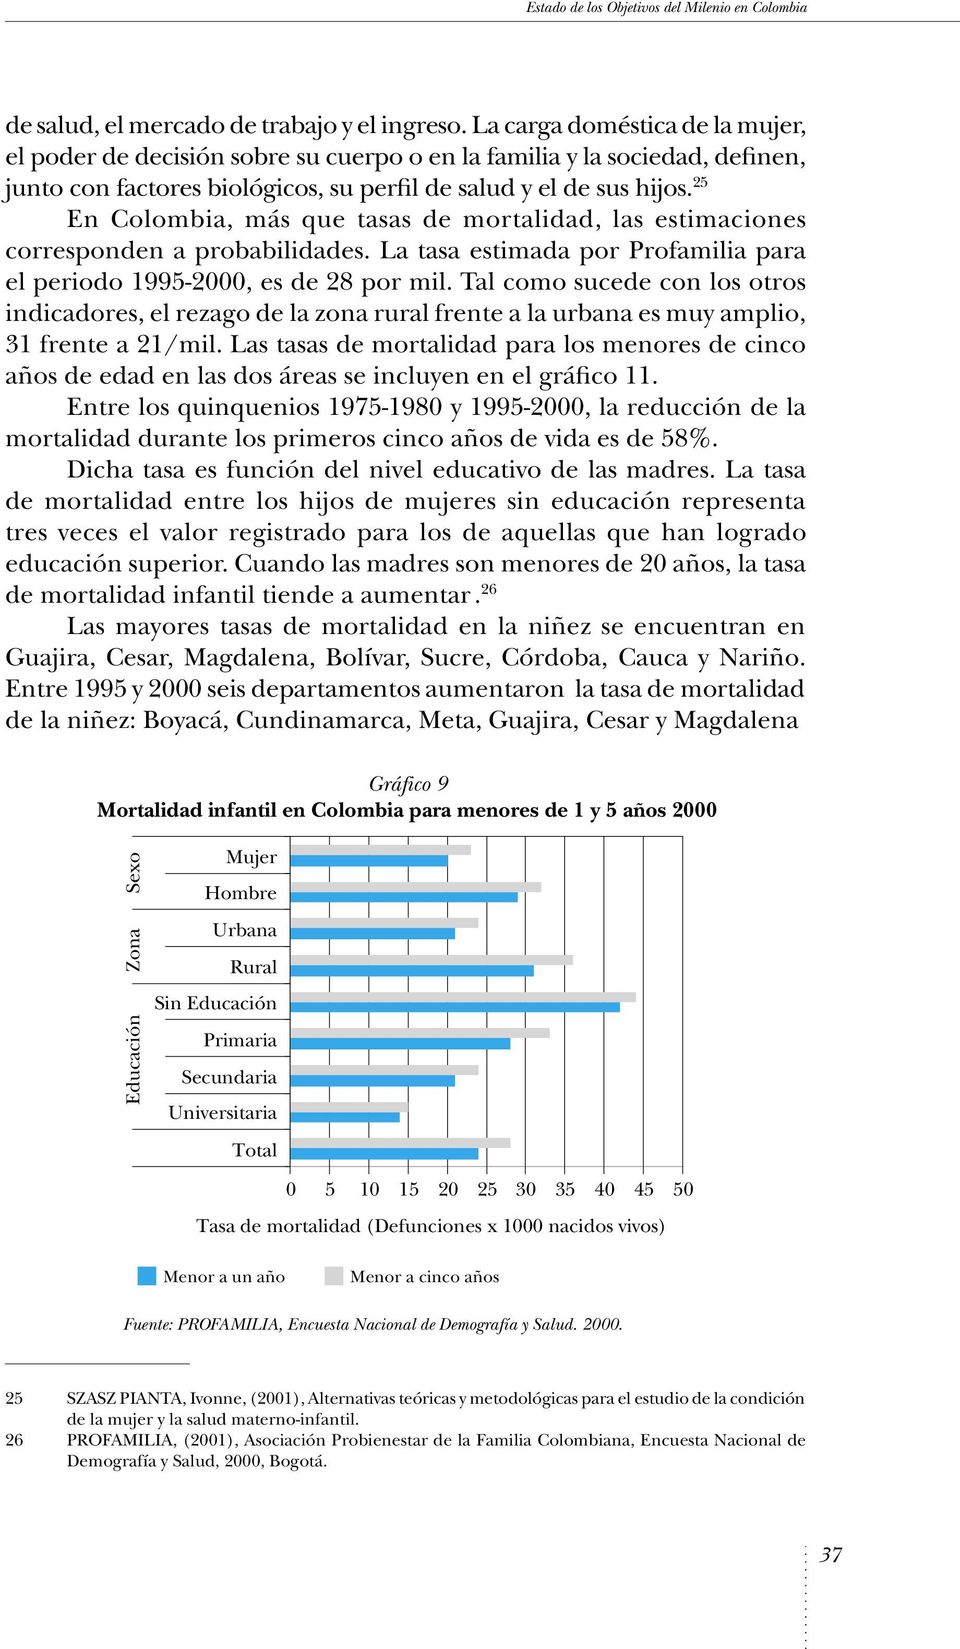 25 En Colombia, más que tasas de mortalidad, las estimaciones corresponden a probabilidades. La tasa estimada por Profamilia para el periodo 1995-2000, es de 28 por mil.